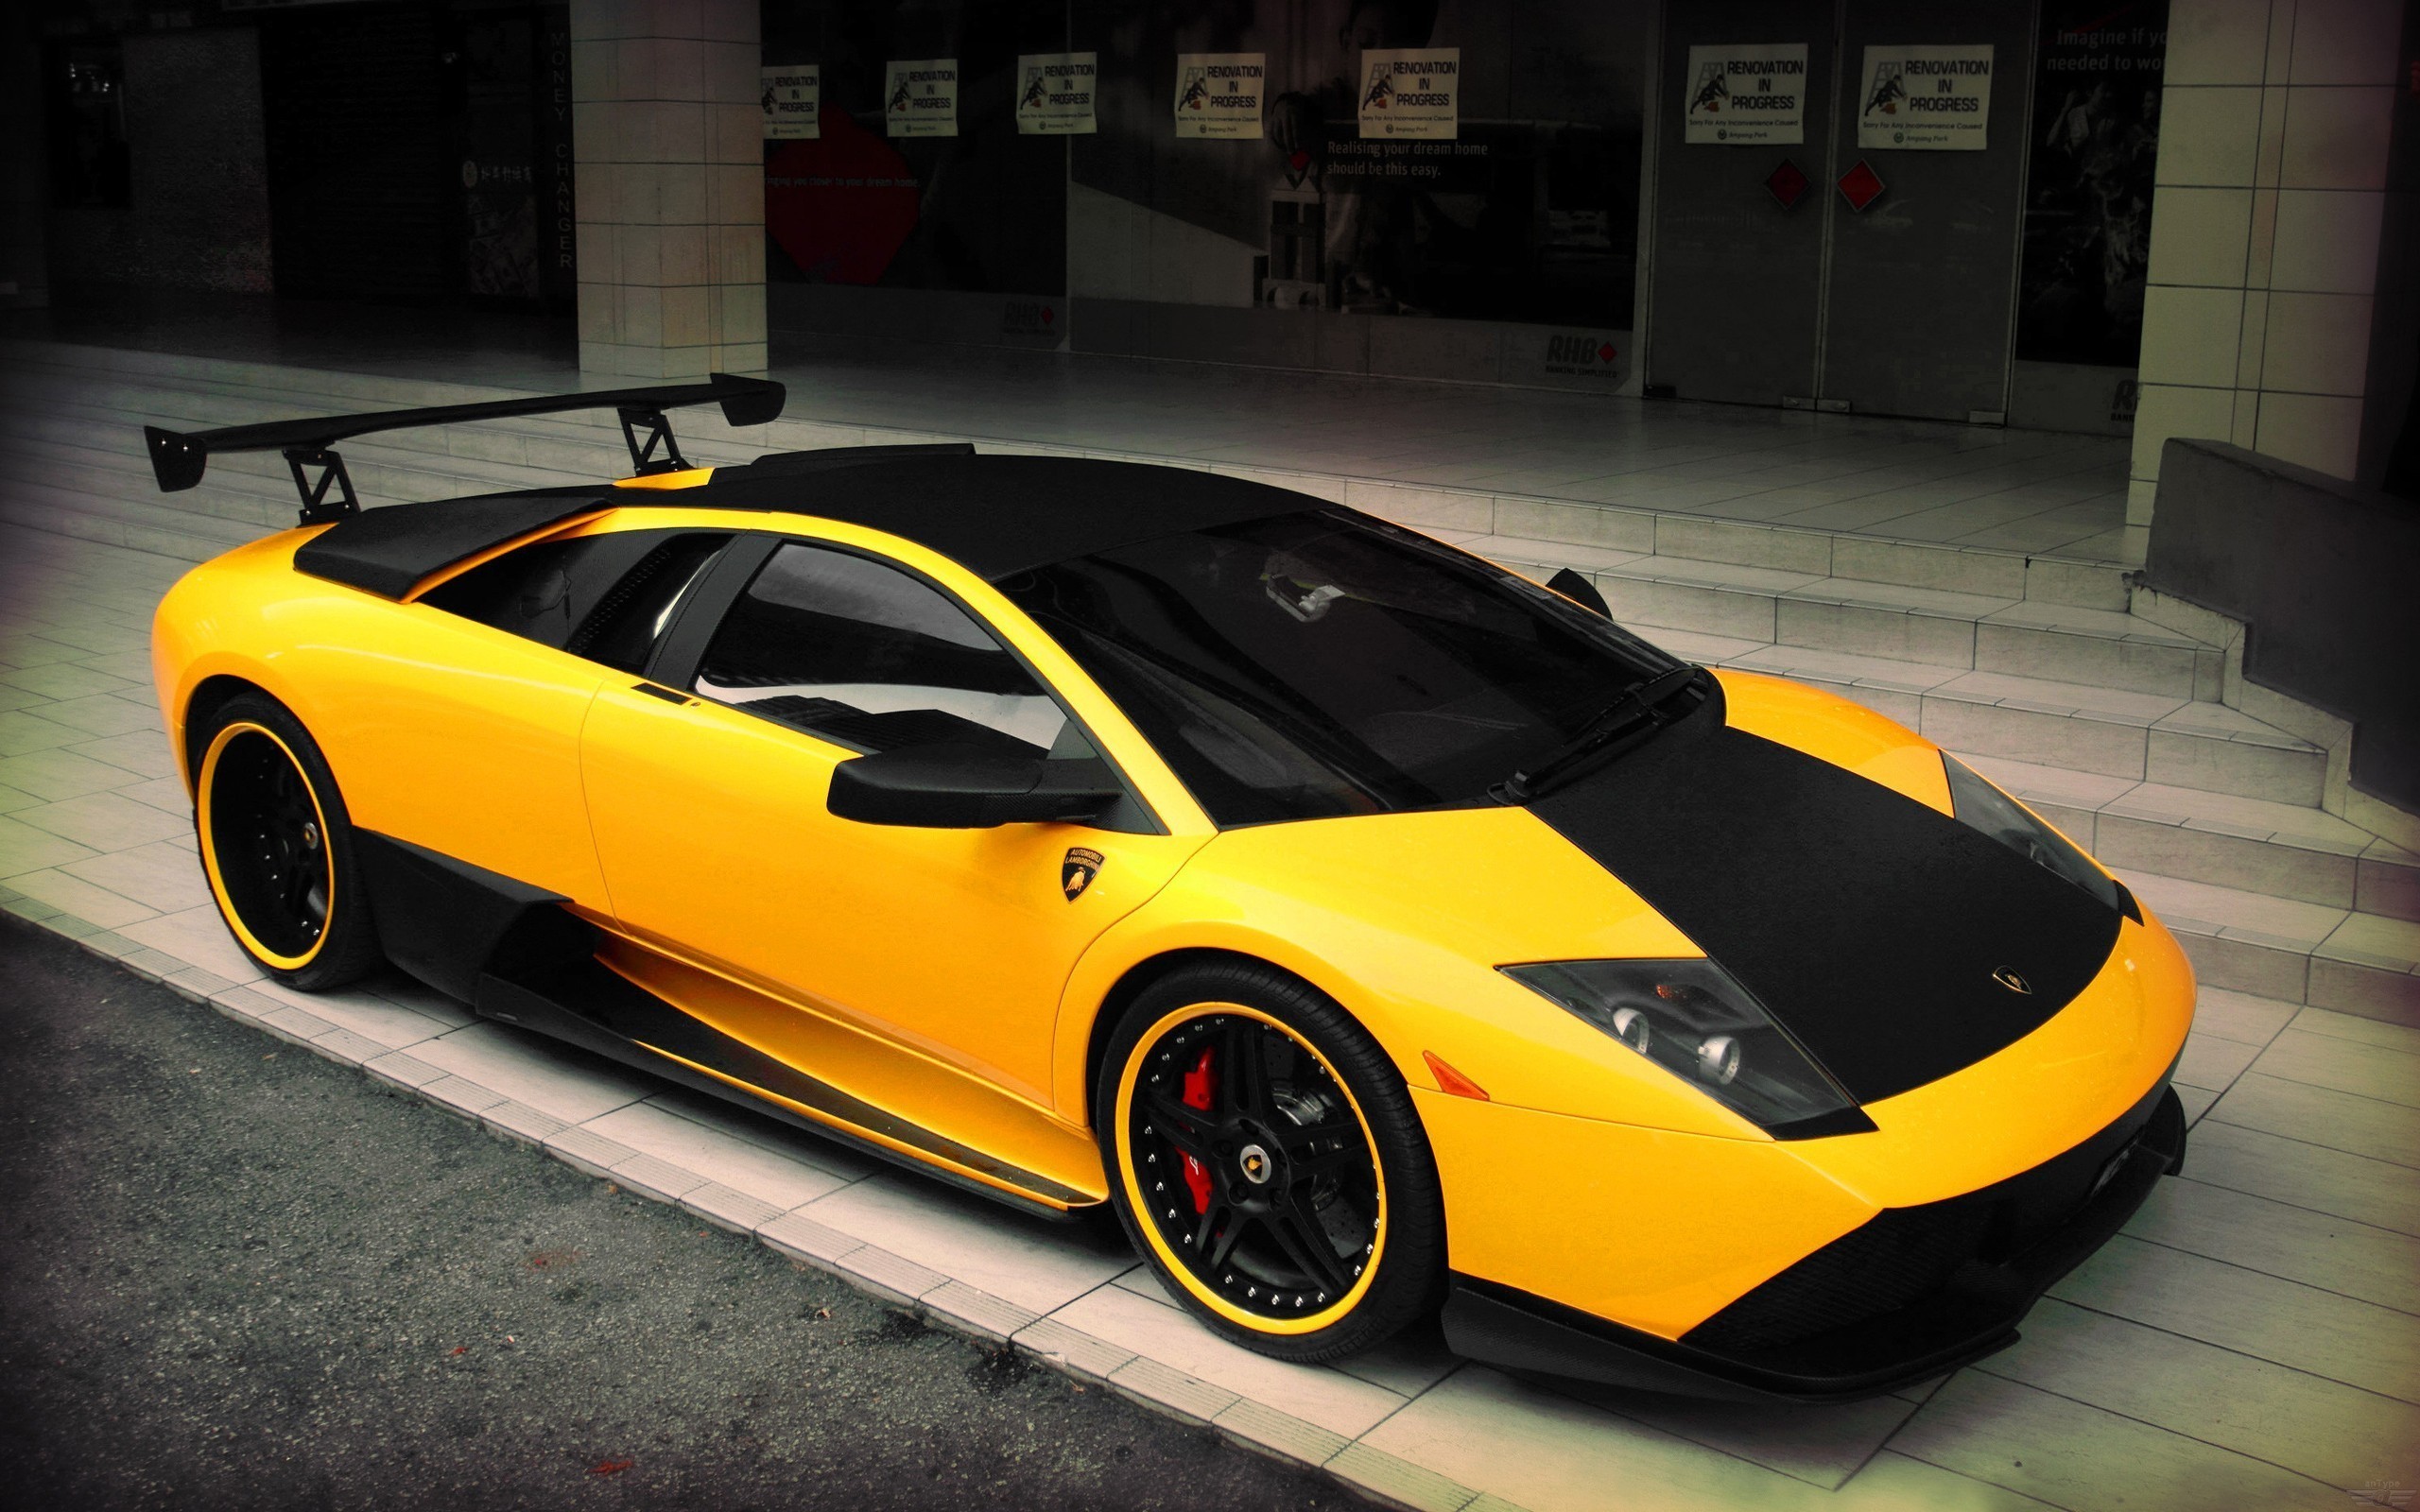 2560x1600 Yellow Lamborghini supercar wallpaper 